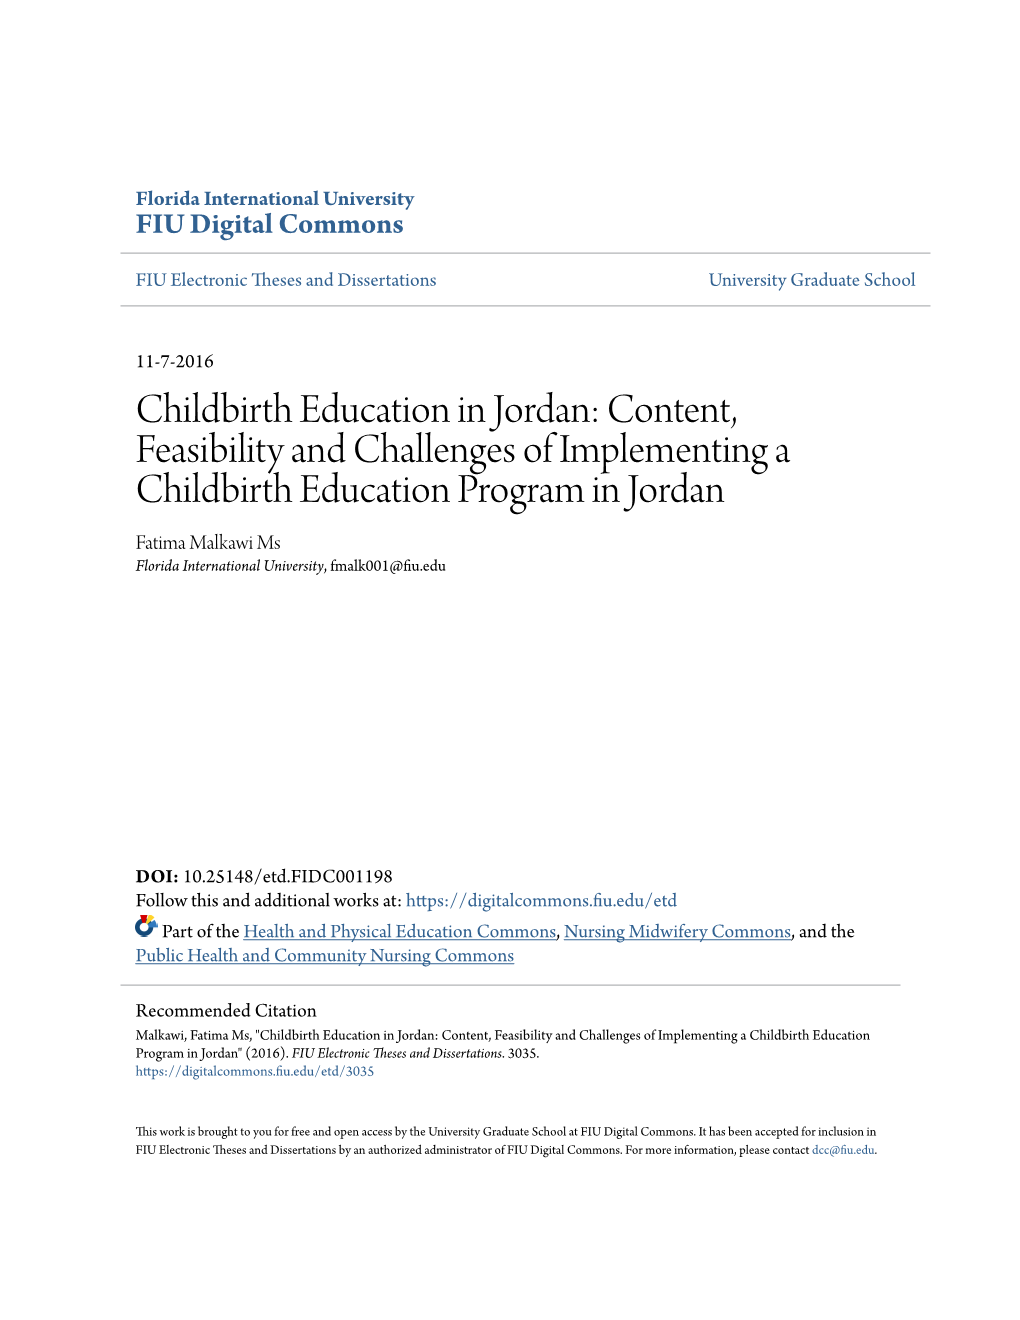 Childbirth Education in Jordan